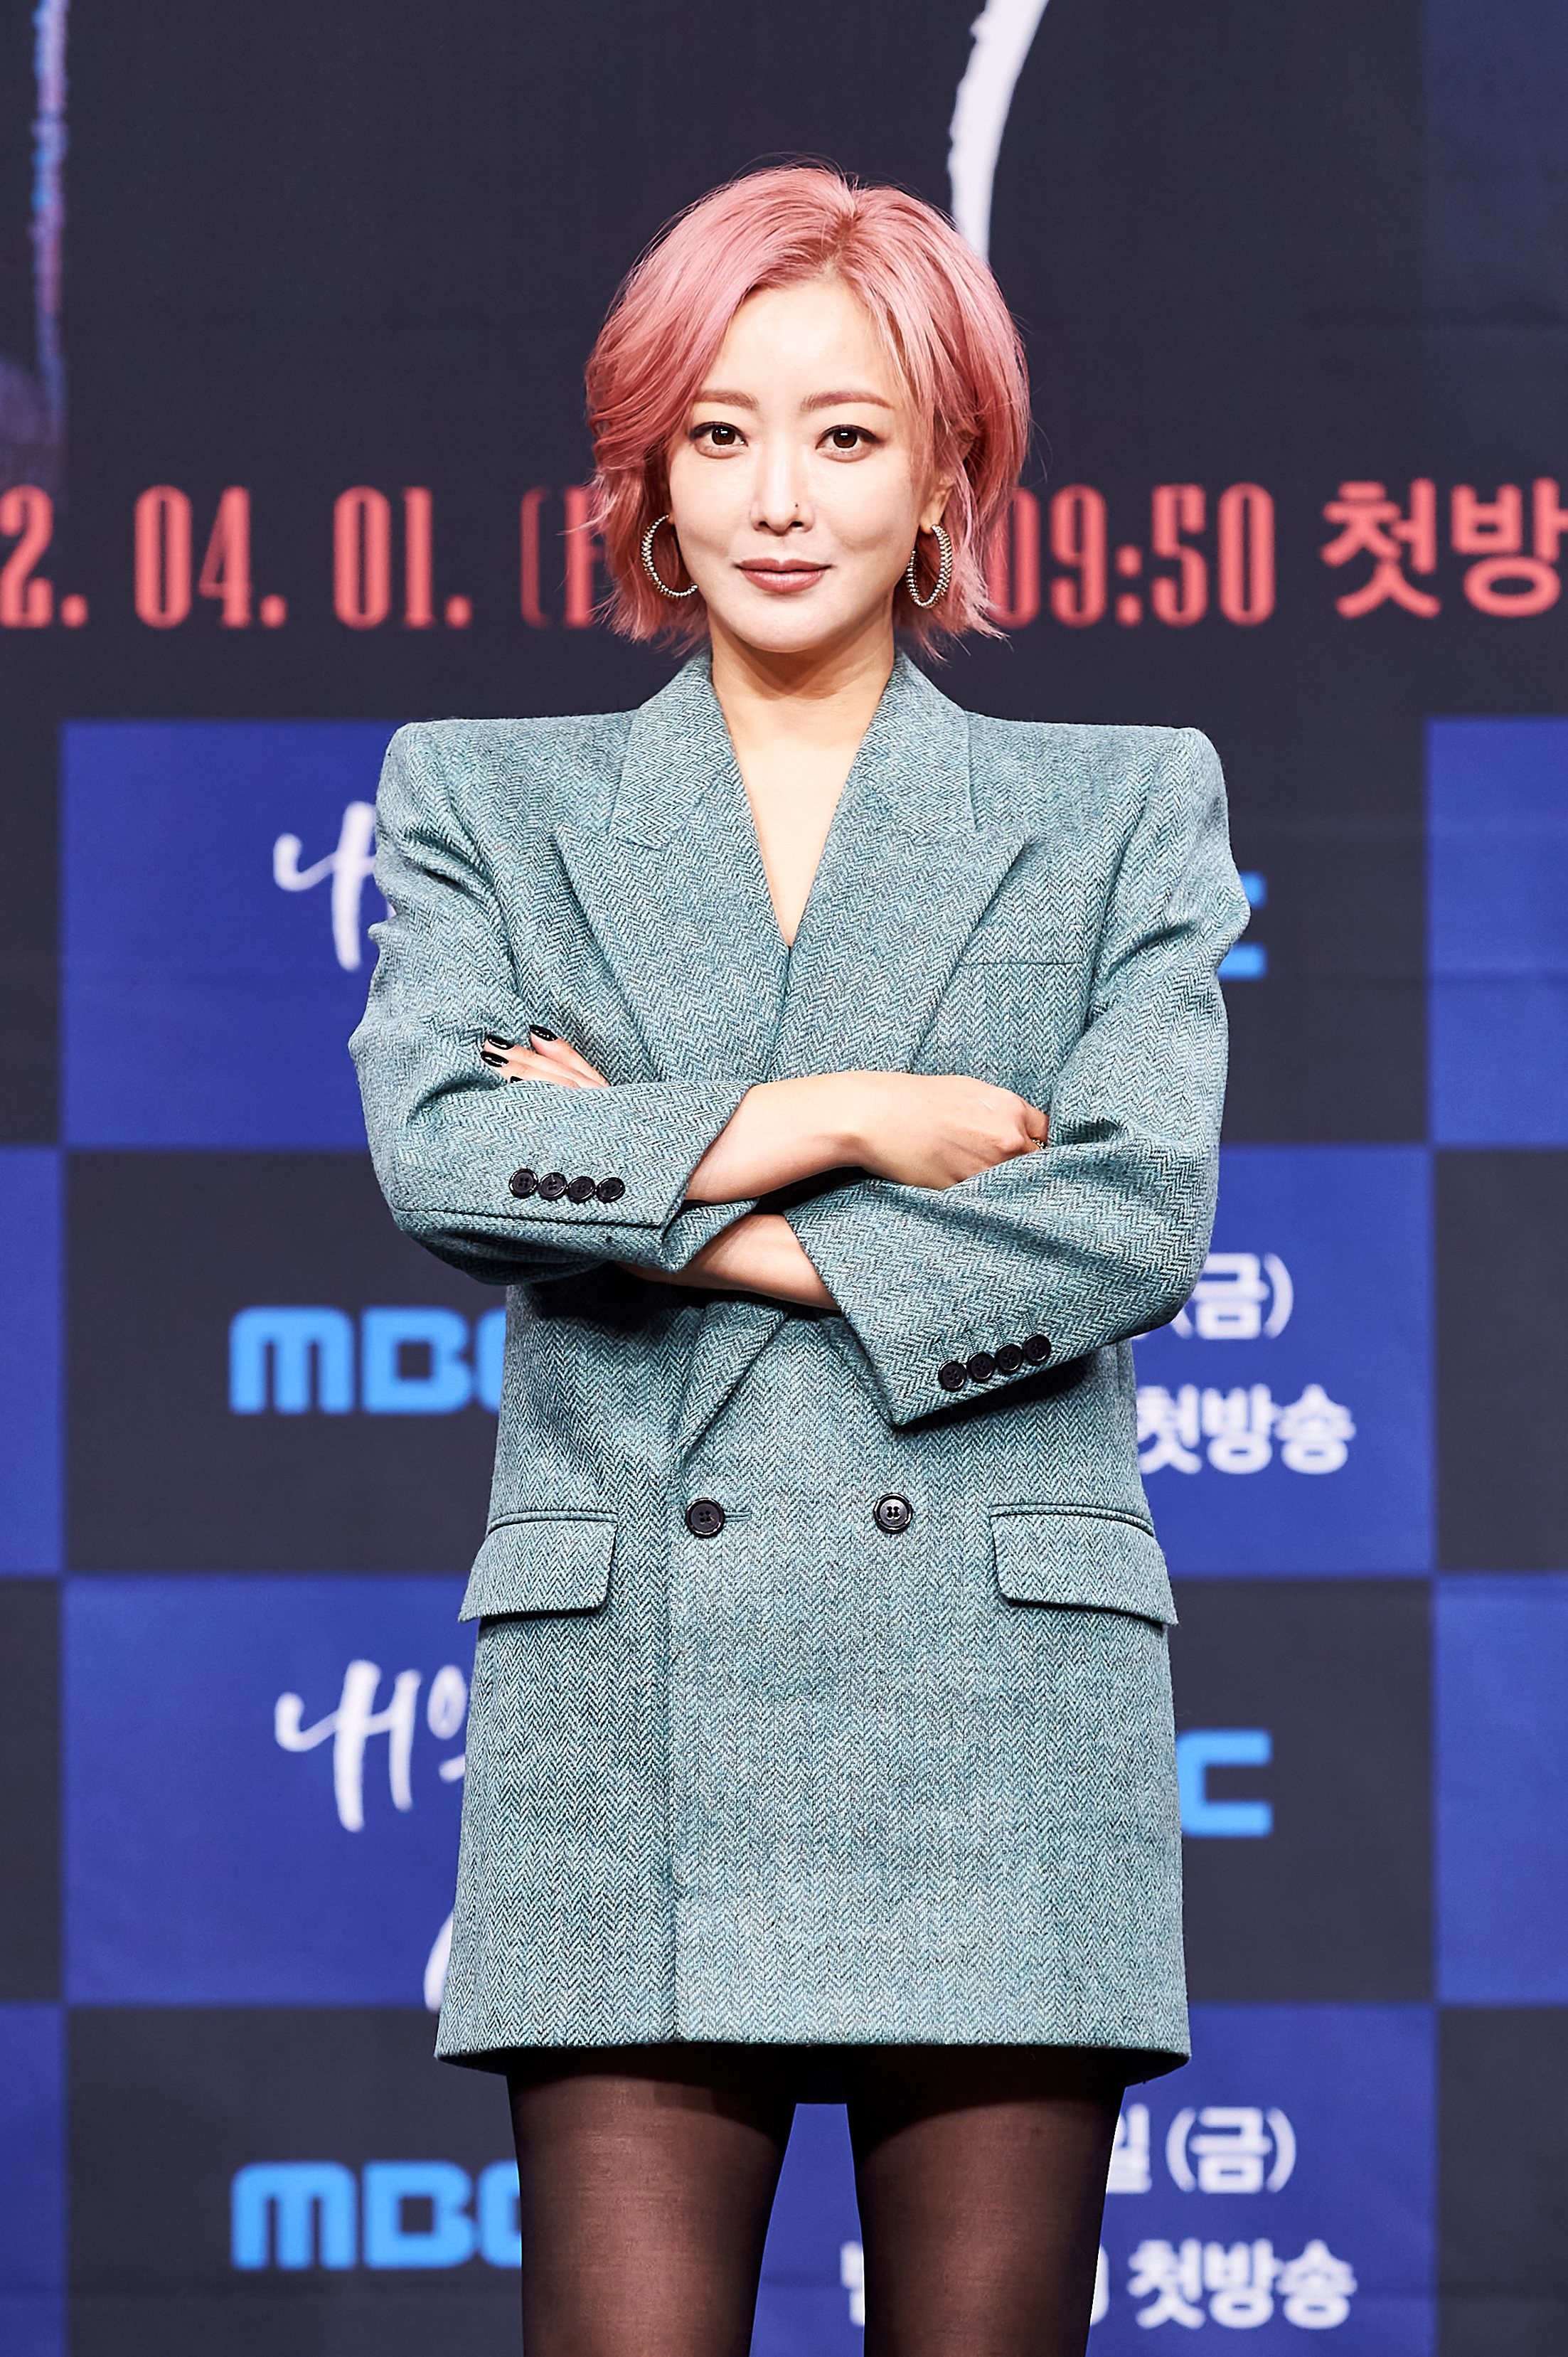 Kim Hee Sun drama Tomorrow